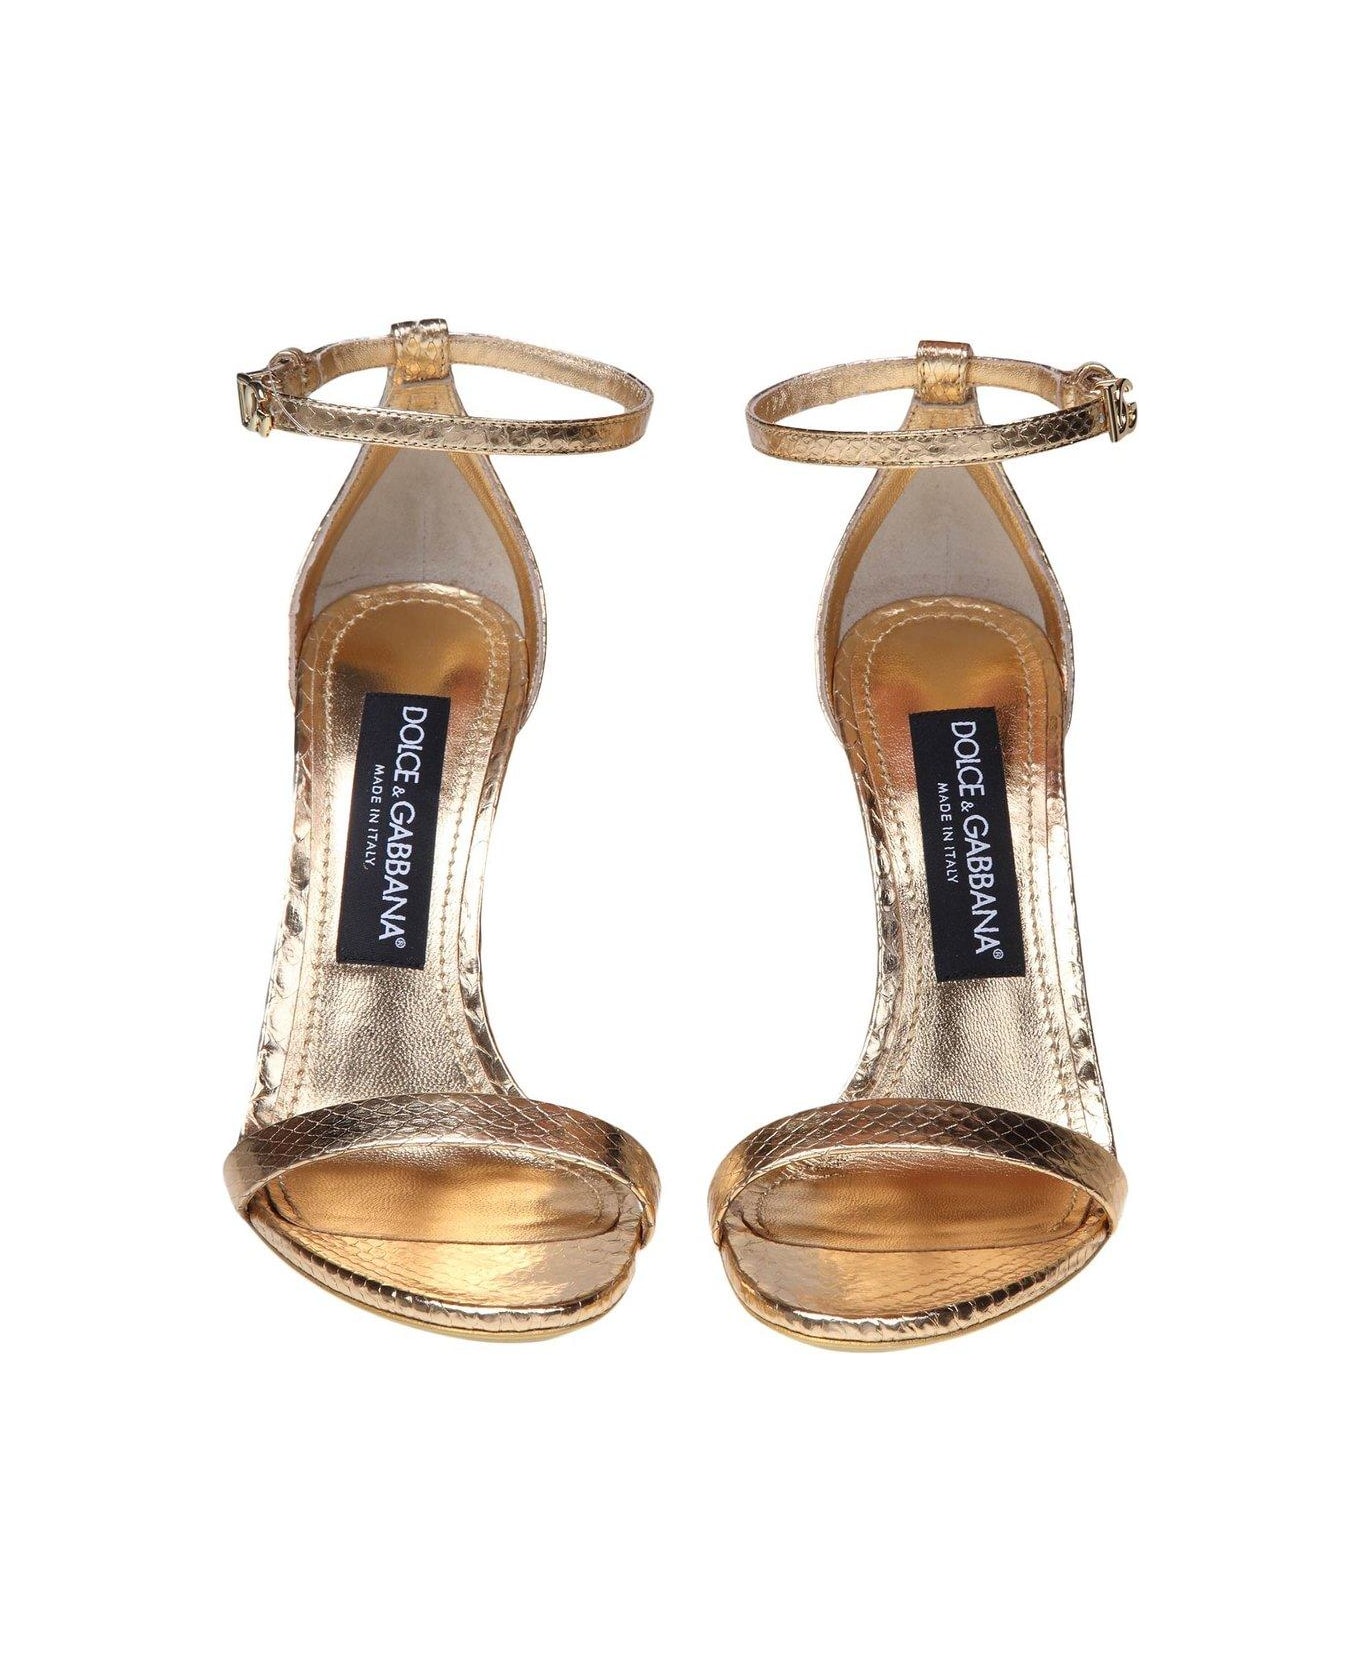 Dolce & Gabbana Keira High Stiletto Heel Sandals - Gold